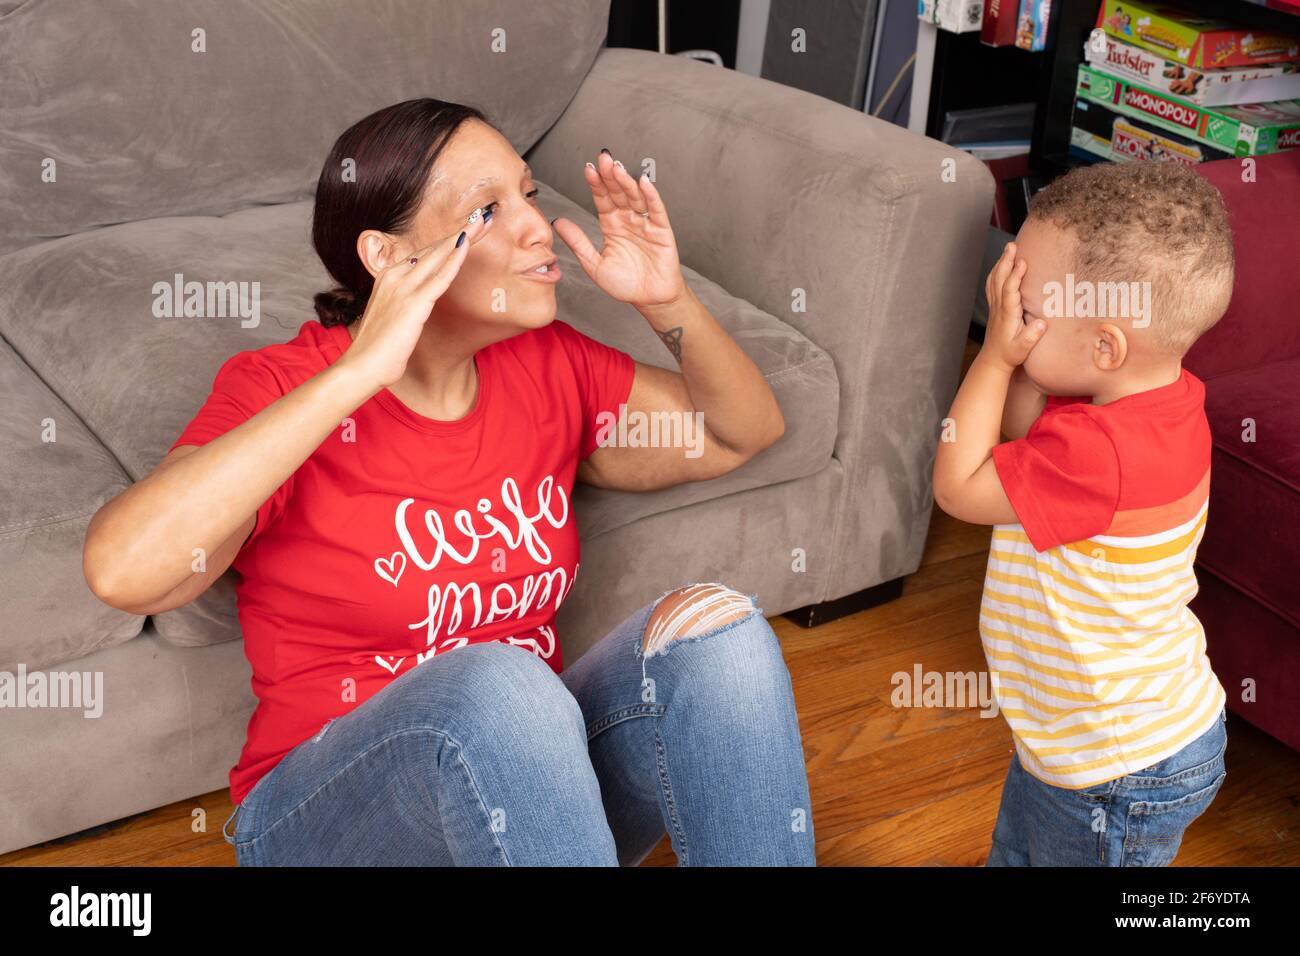 Madre interactuando y jugando con el hijo de 2 años, esconderse y buscar a simple vista Foto de stock